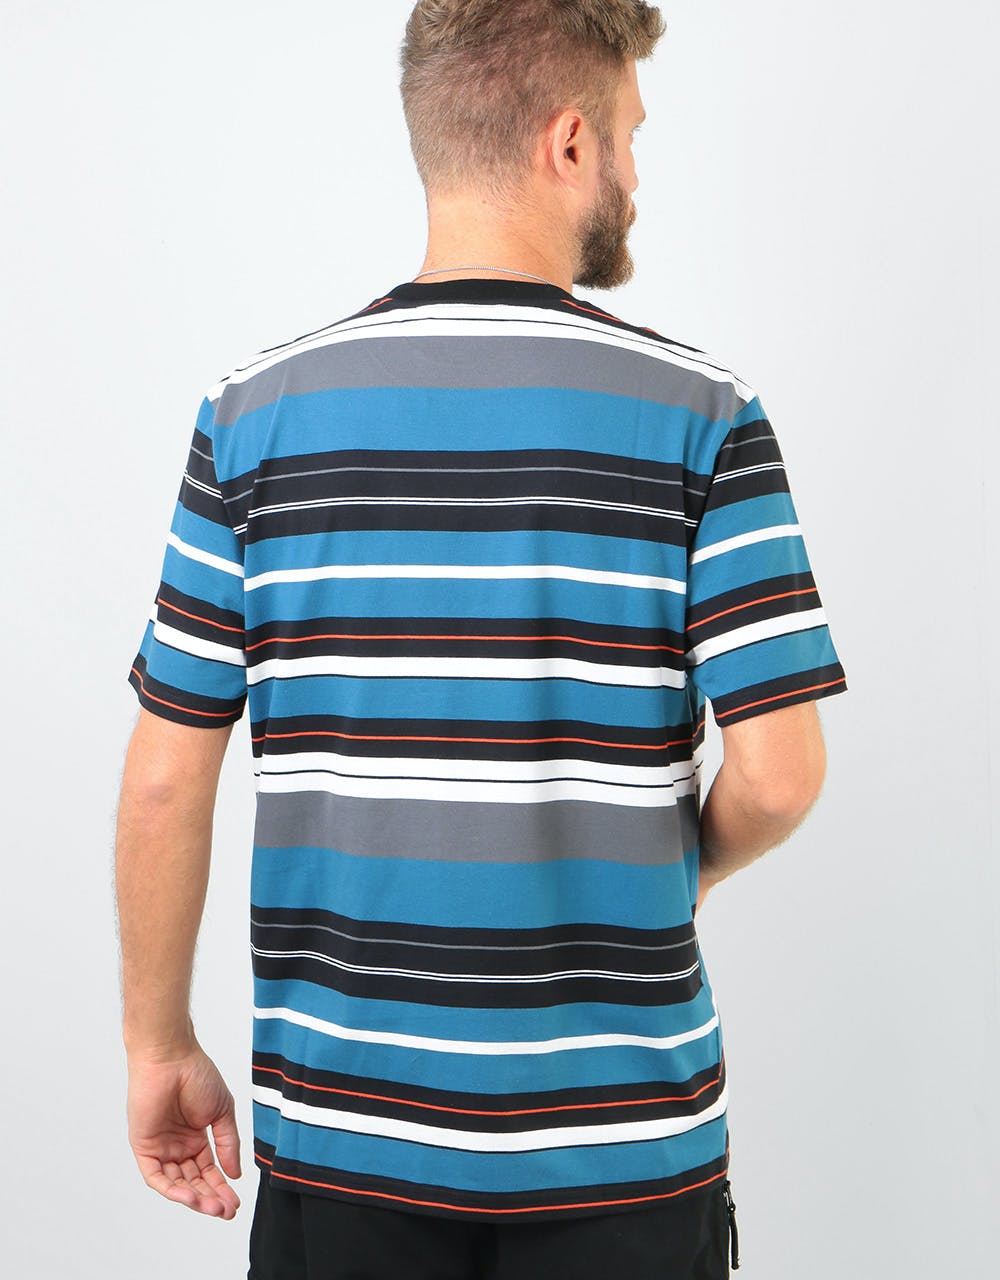 Carhartt WIP S/S Flint T-Shirt - Flint Stripe/Prussian Blue